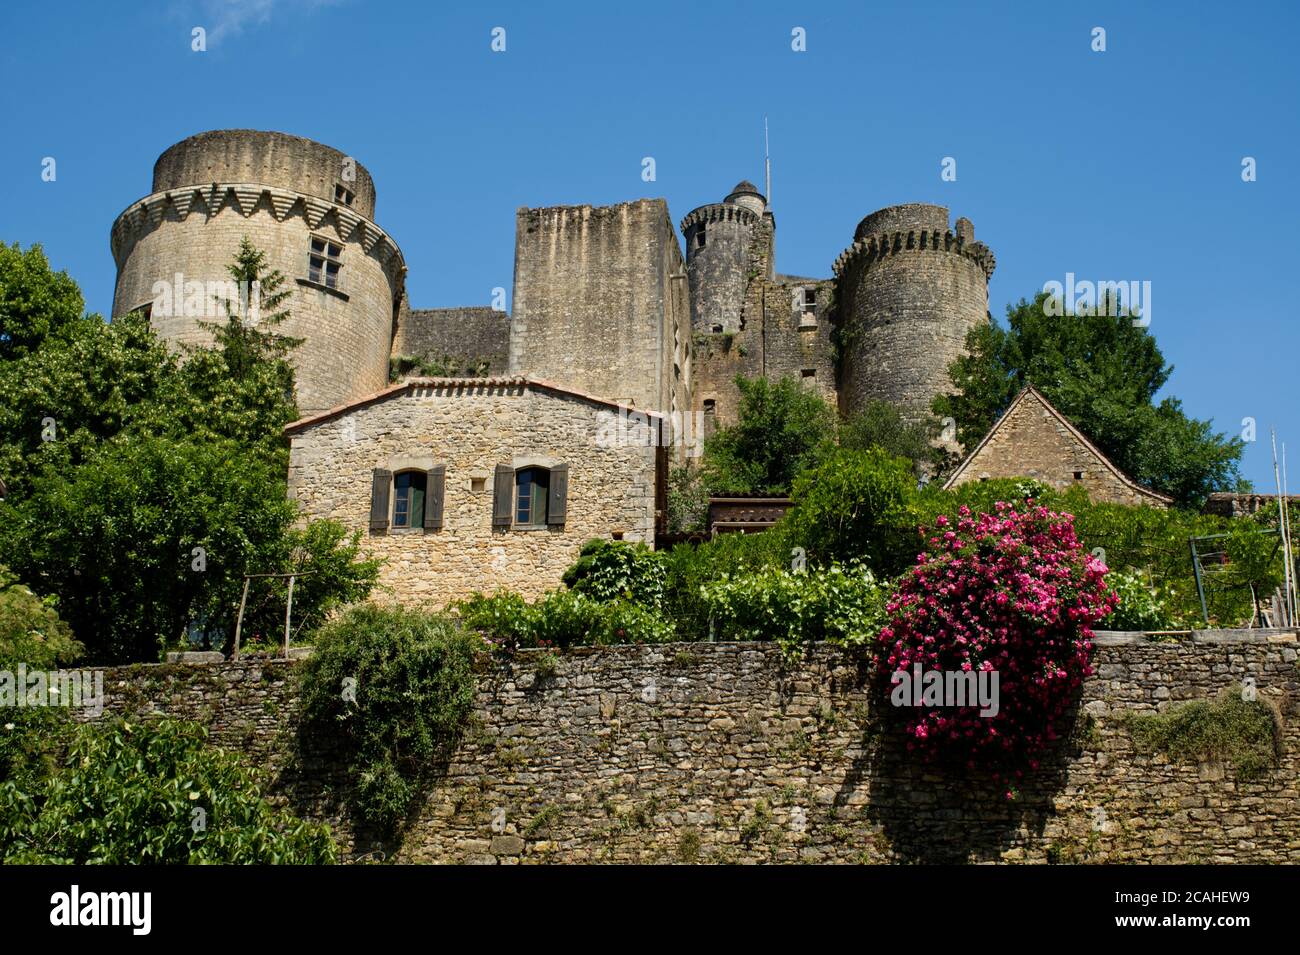 The Chateau de Bonaguil sitting above the village of Bonaguil, near Fumel, Lot-et-Garonne, France Stock Photo